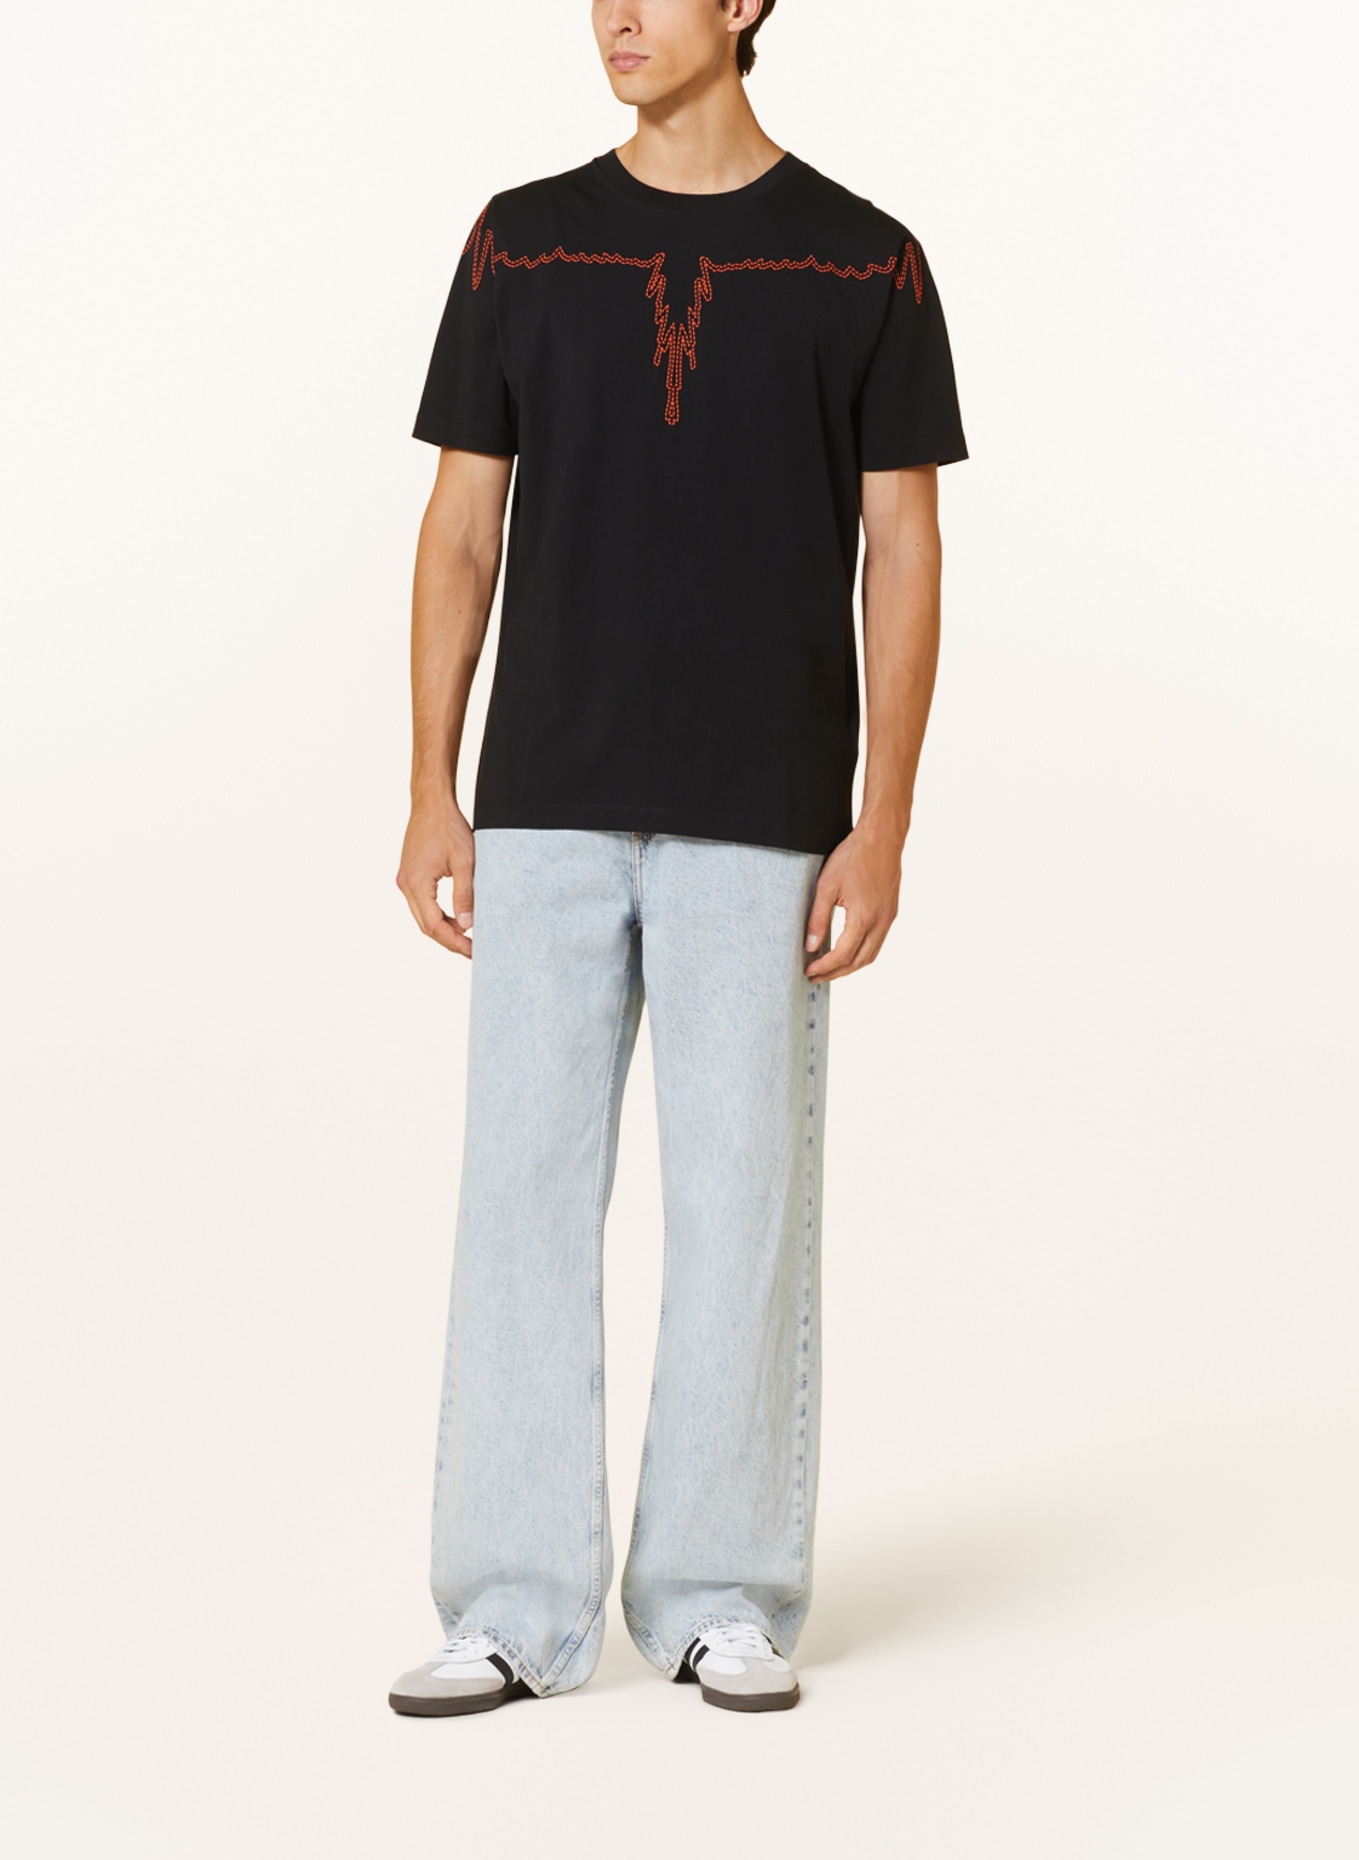 MARCELO BURLON T-shirt STITCH WINGS, Color: BLACK/ ORANGE (Image 2)